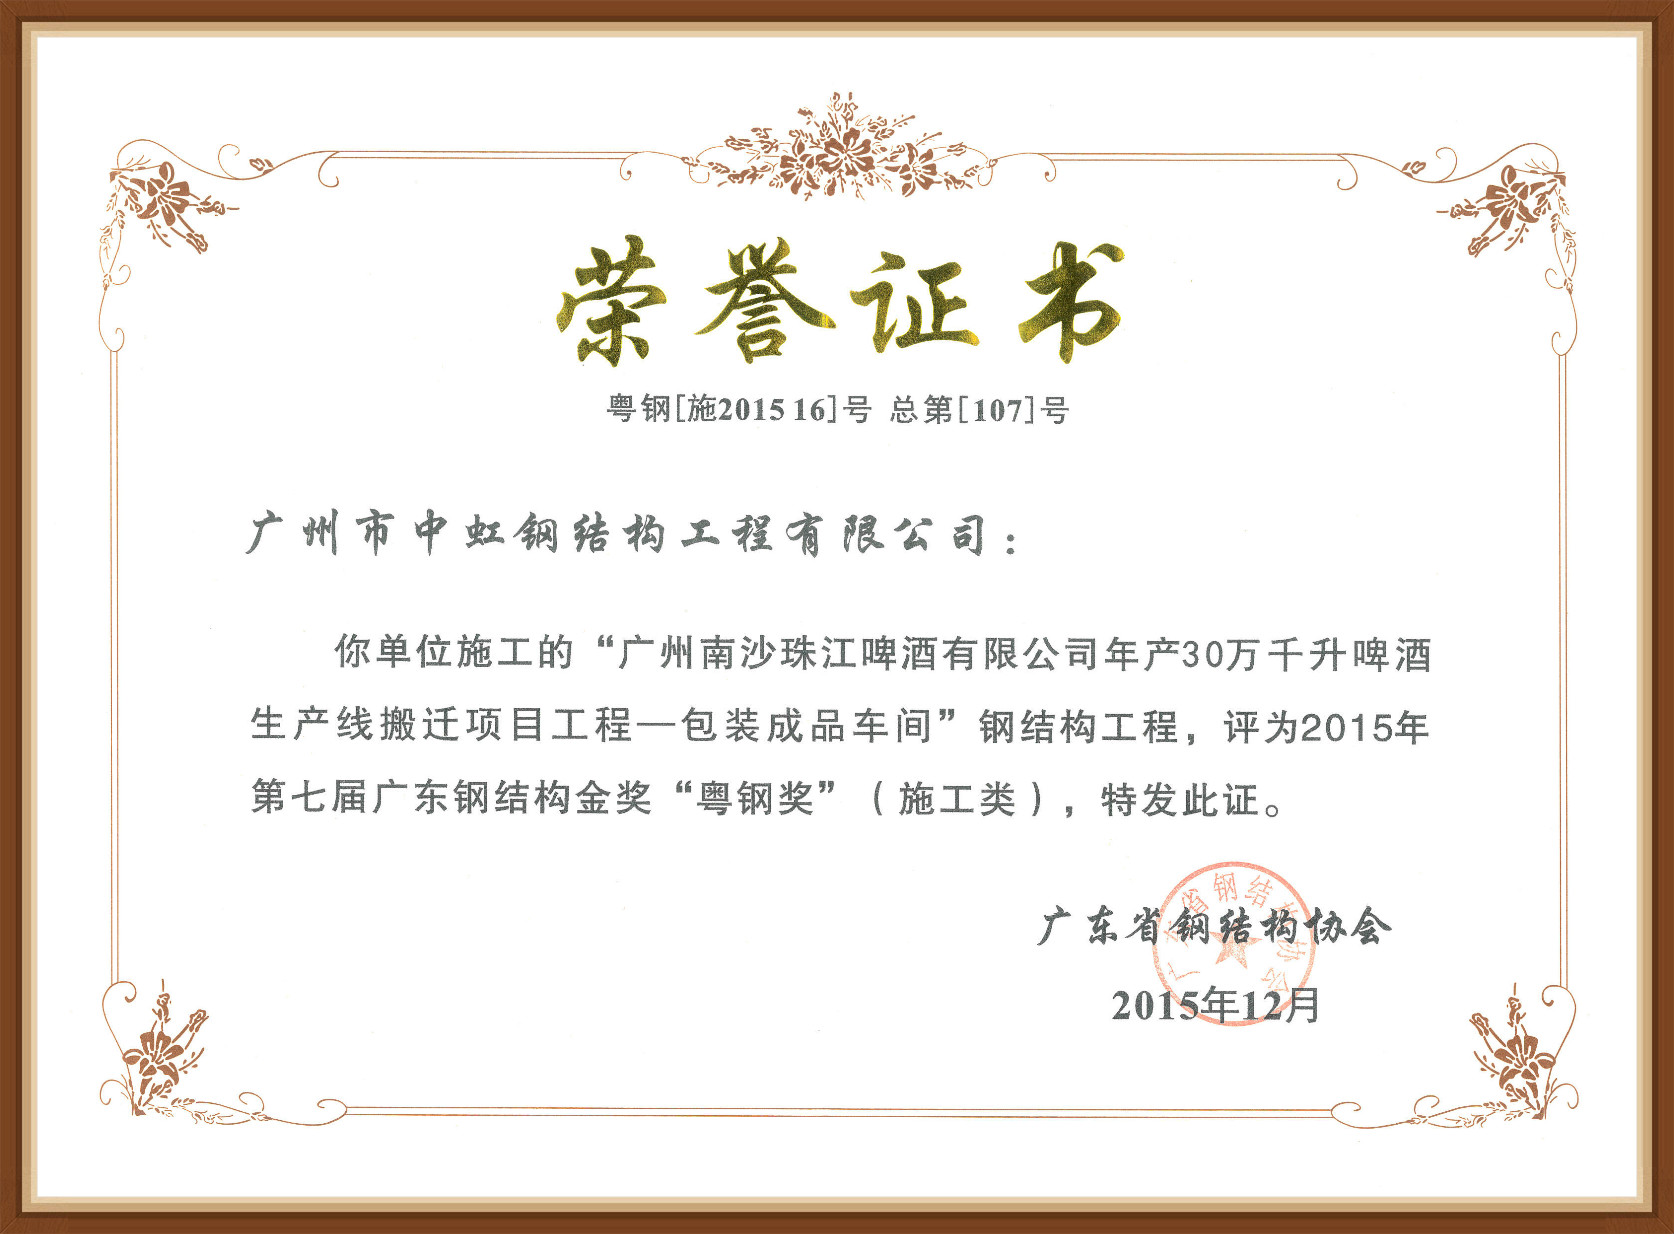 Guangdong Steel Award